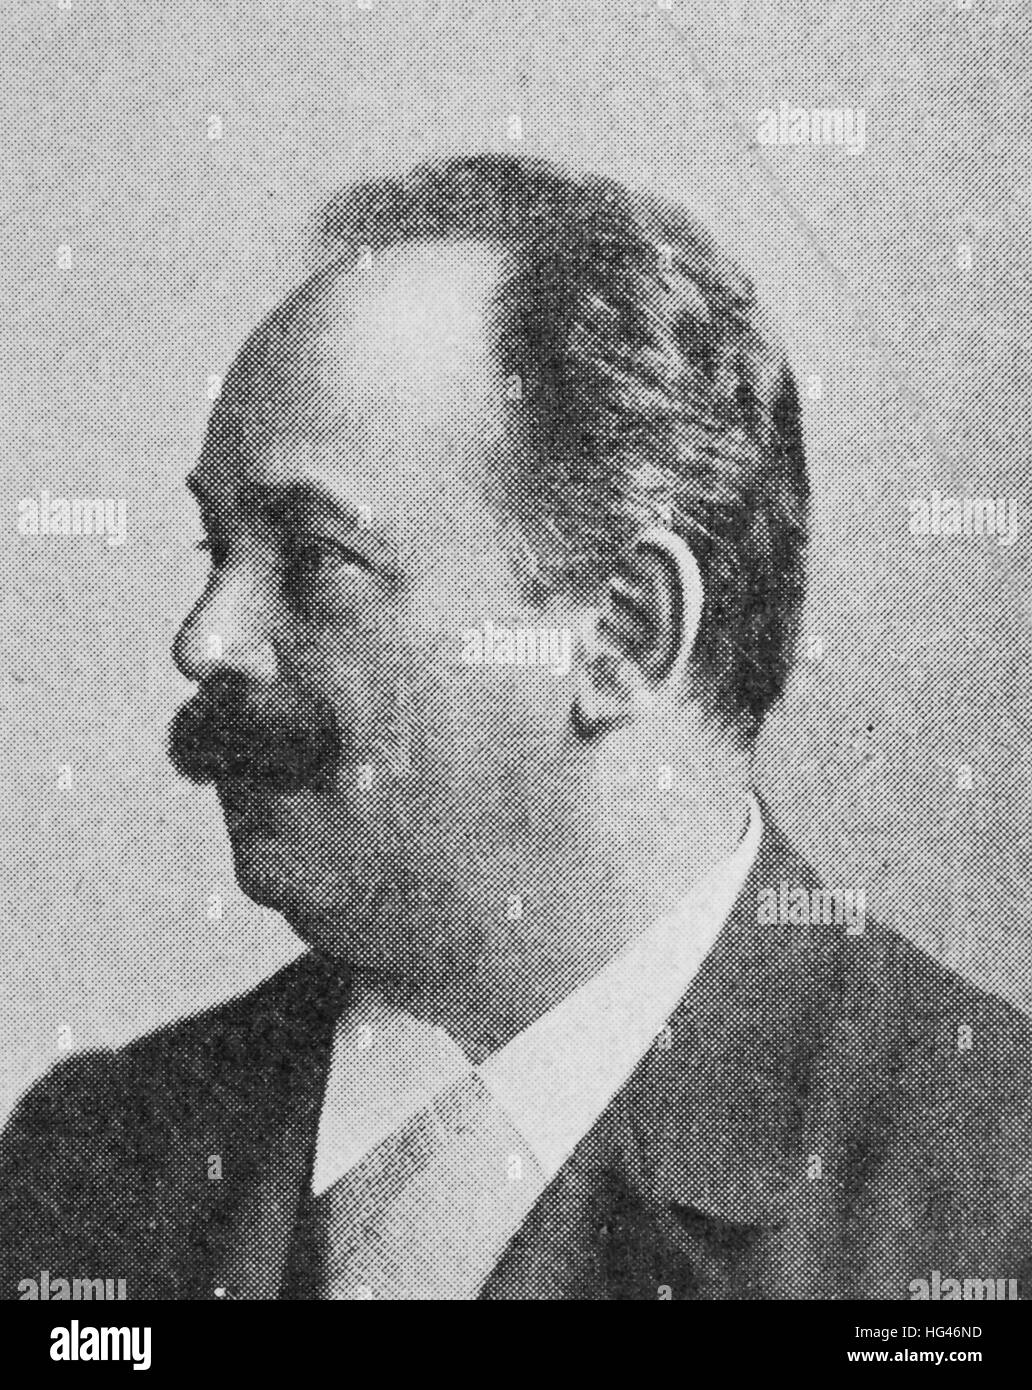 Franz Heinrich Bernhard Mueller, le 13 mai 1851 - Le 24 avril 1925, connu comme Mueller-Breslau à partir de autour de 1875 pour le distinguer des autres personnes avec le même nom, était un ingénieur civil et professeur de lycée, reproduction d'une photo de l'année 1895, l'amélioration numérique Banque D'Images